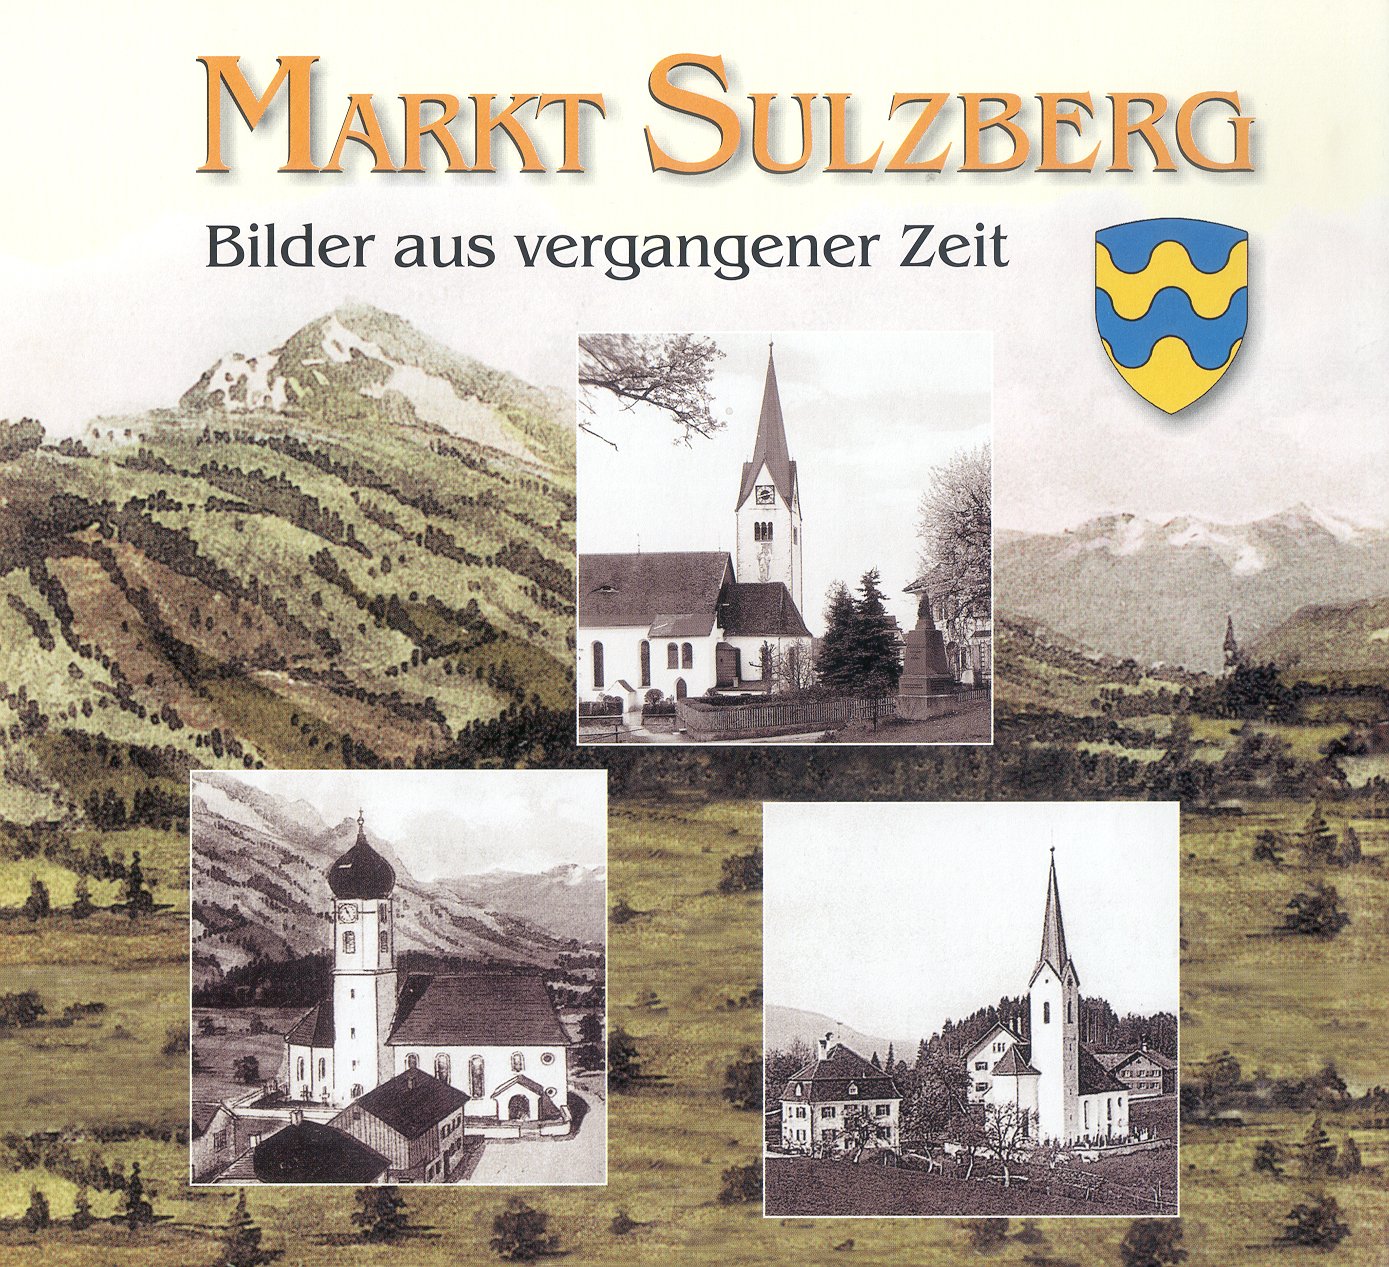 Buchvover des Bildbandes "Markt Sulzberg" - Bilder aus verganener Zeit